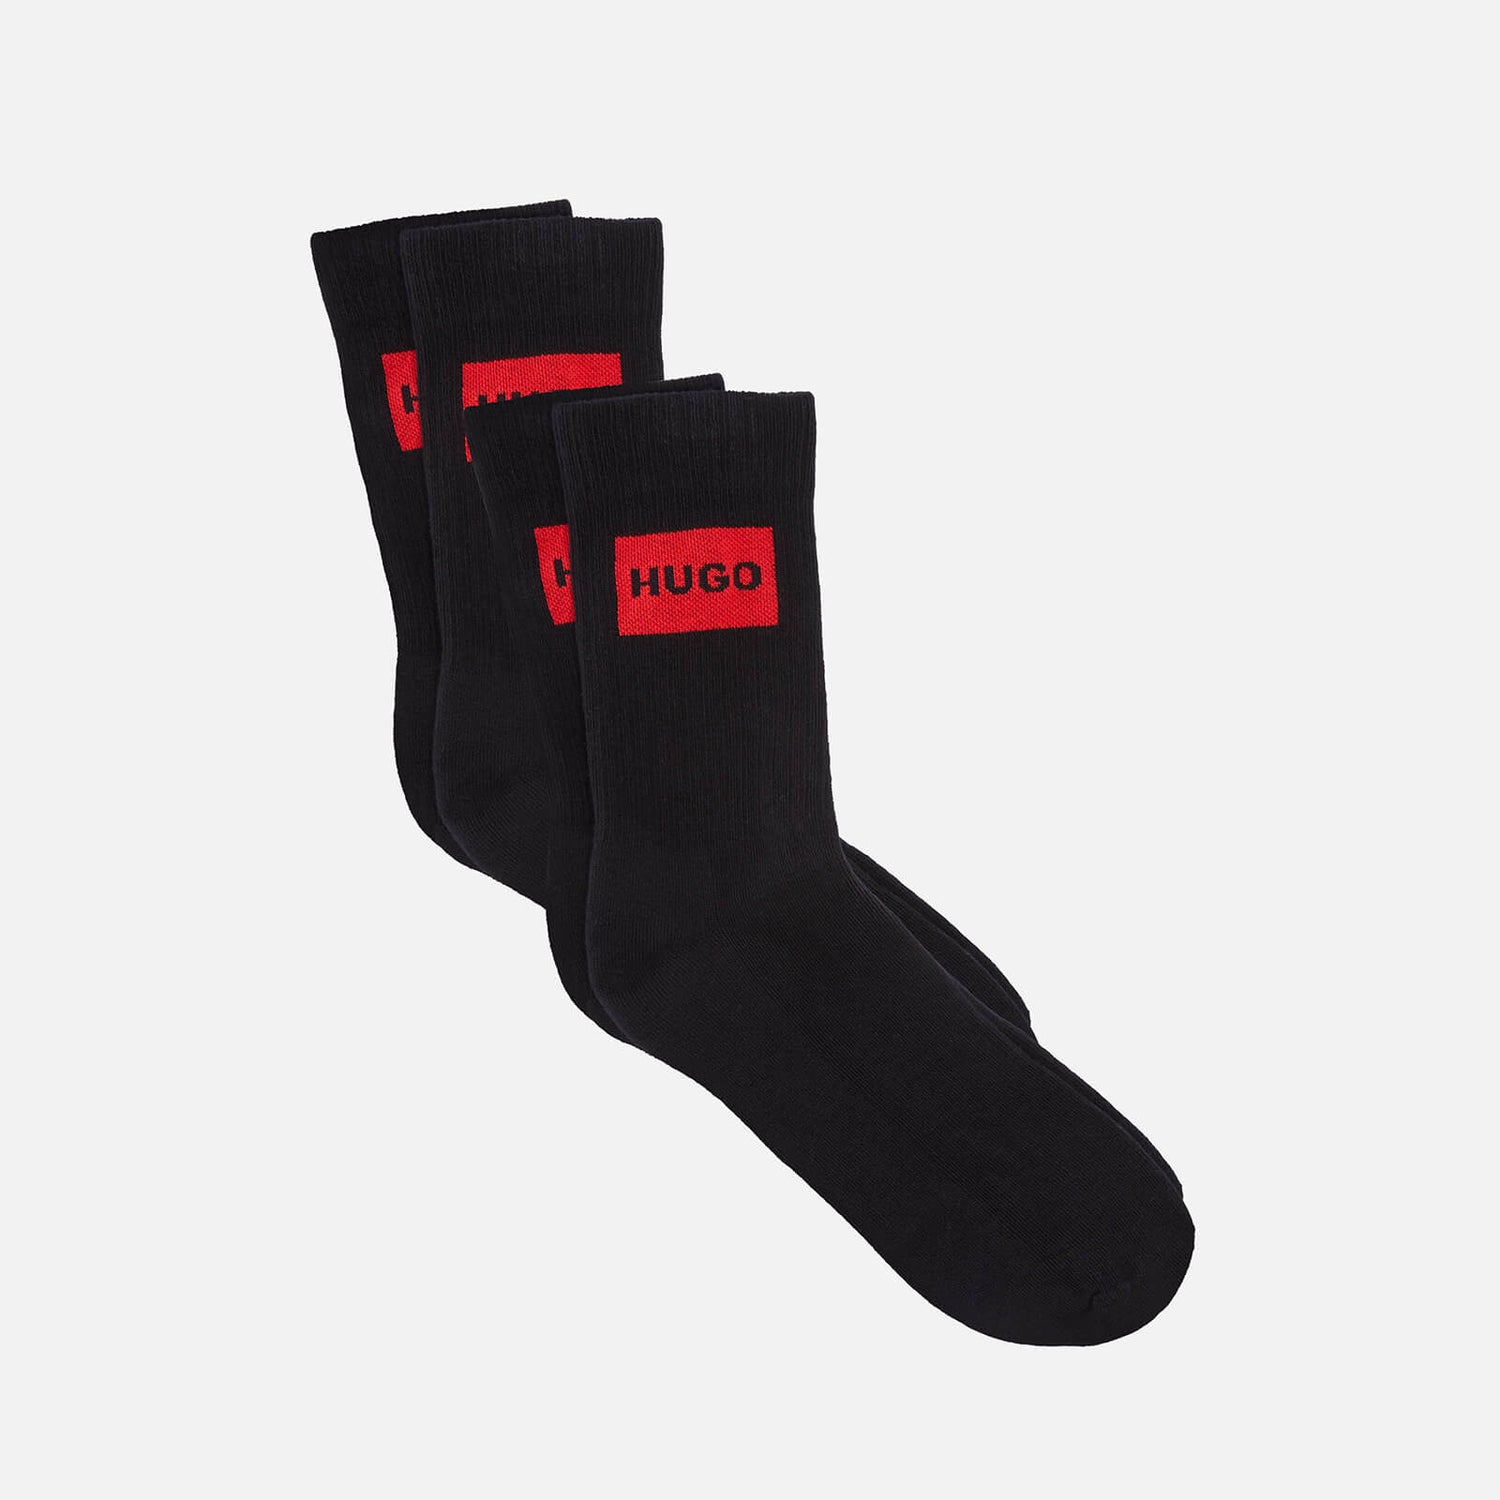 HUGO Bodywear Men's Ribbed Label 2-Pack Socks - Black - 39-42